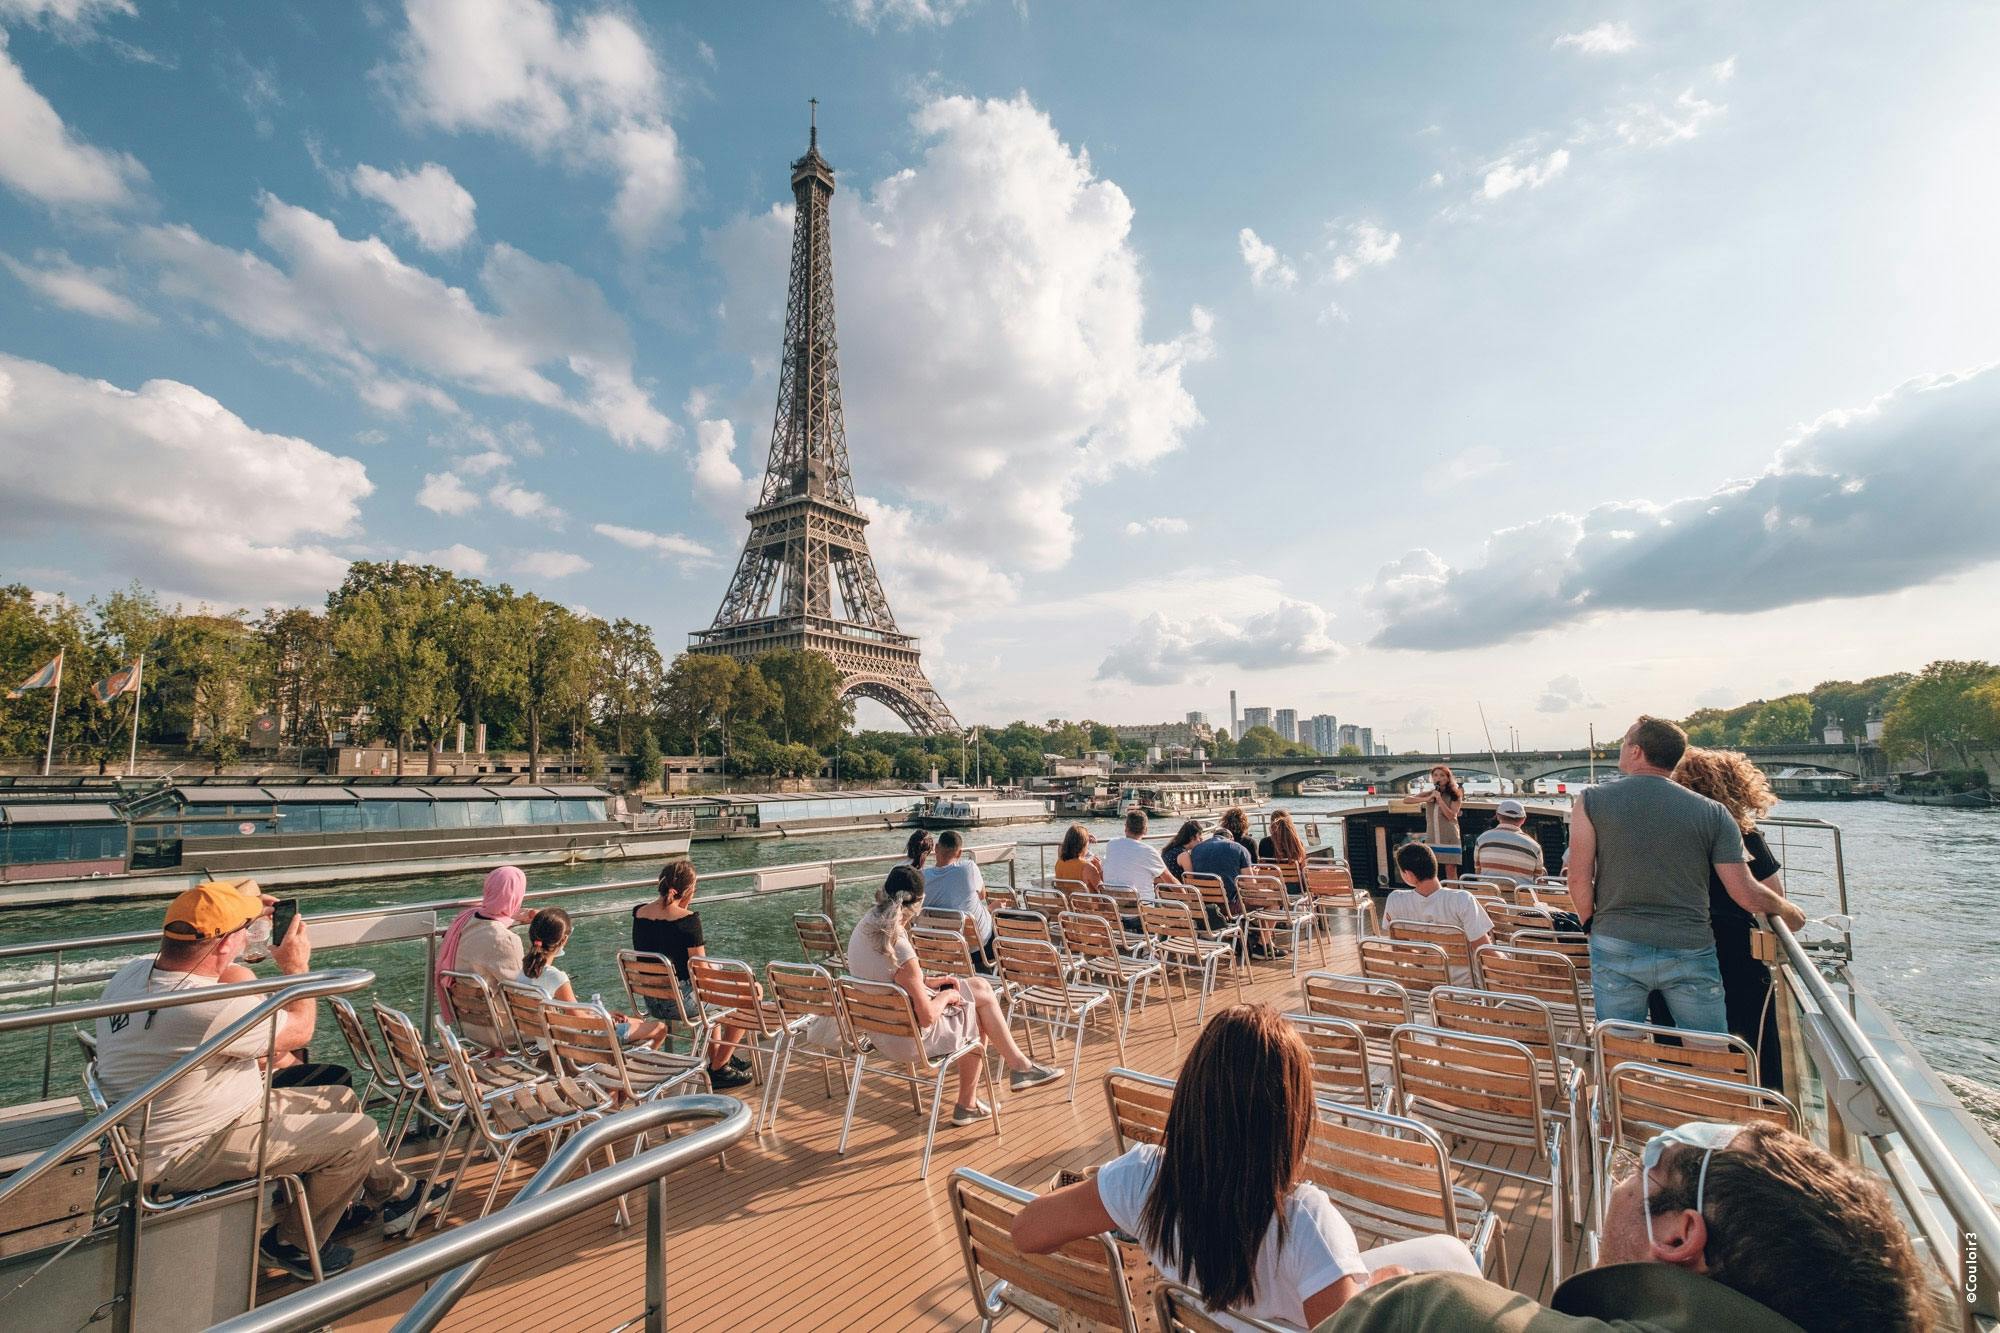 Croisière sur la Seine avec transport aller-retour depuis Disneyland® Paris